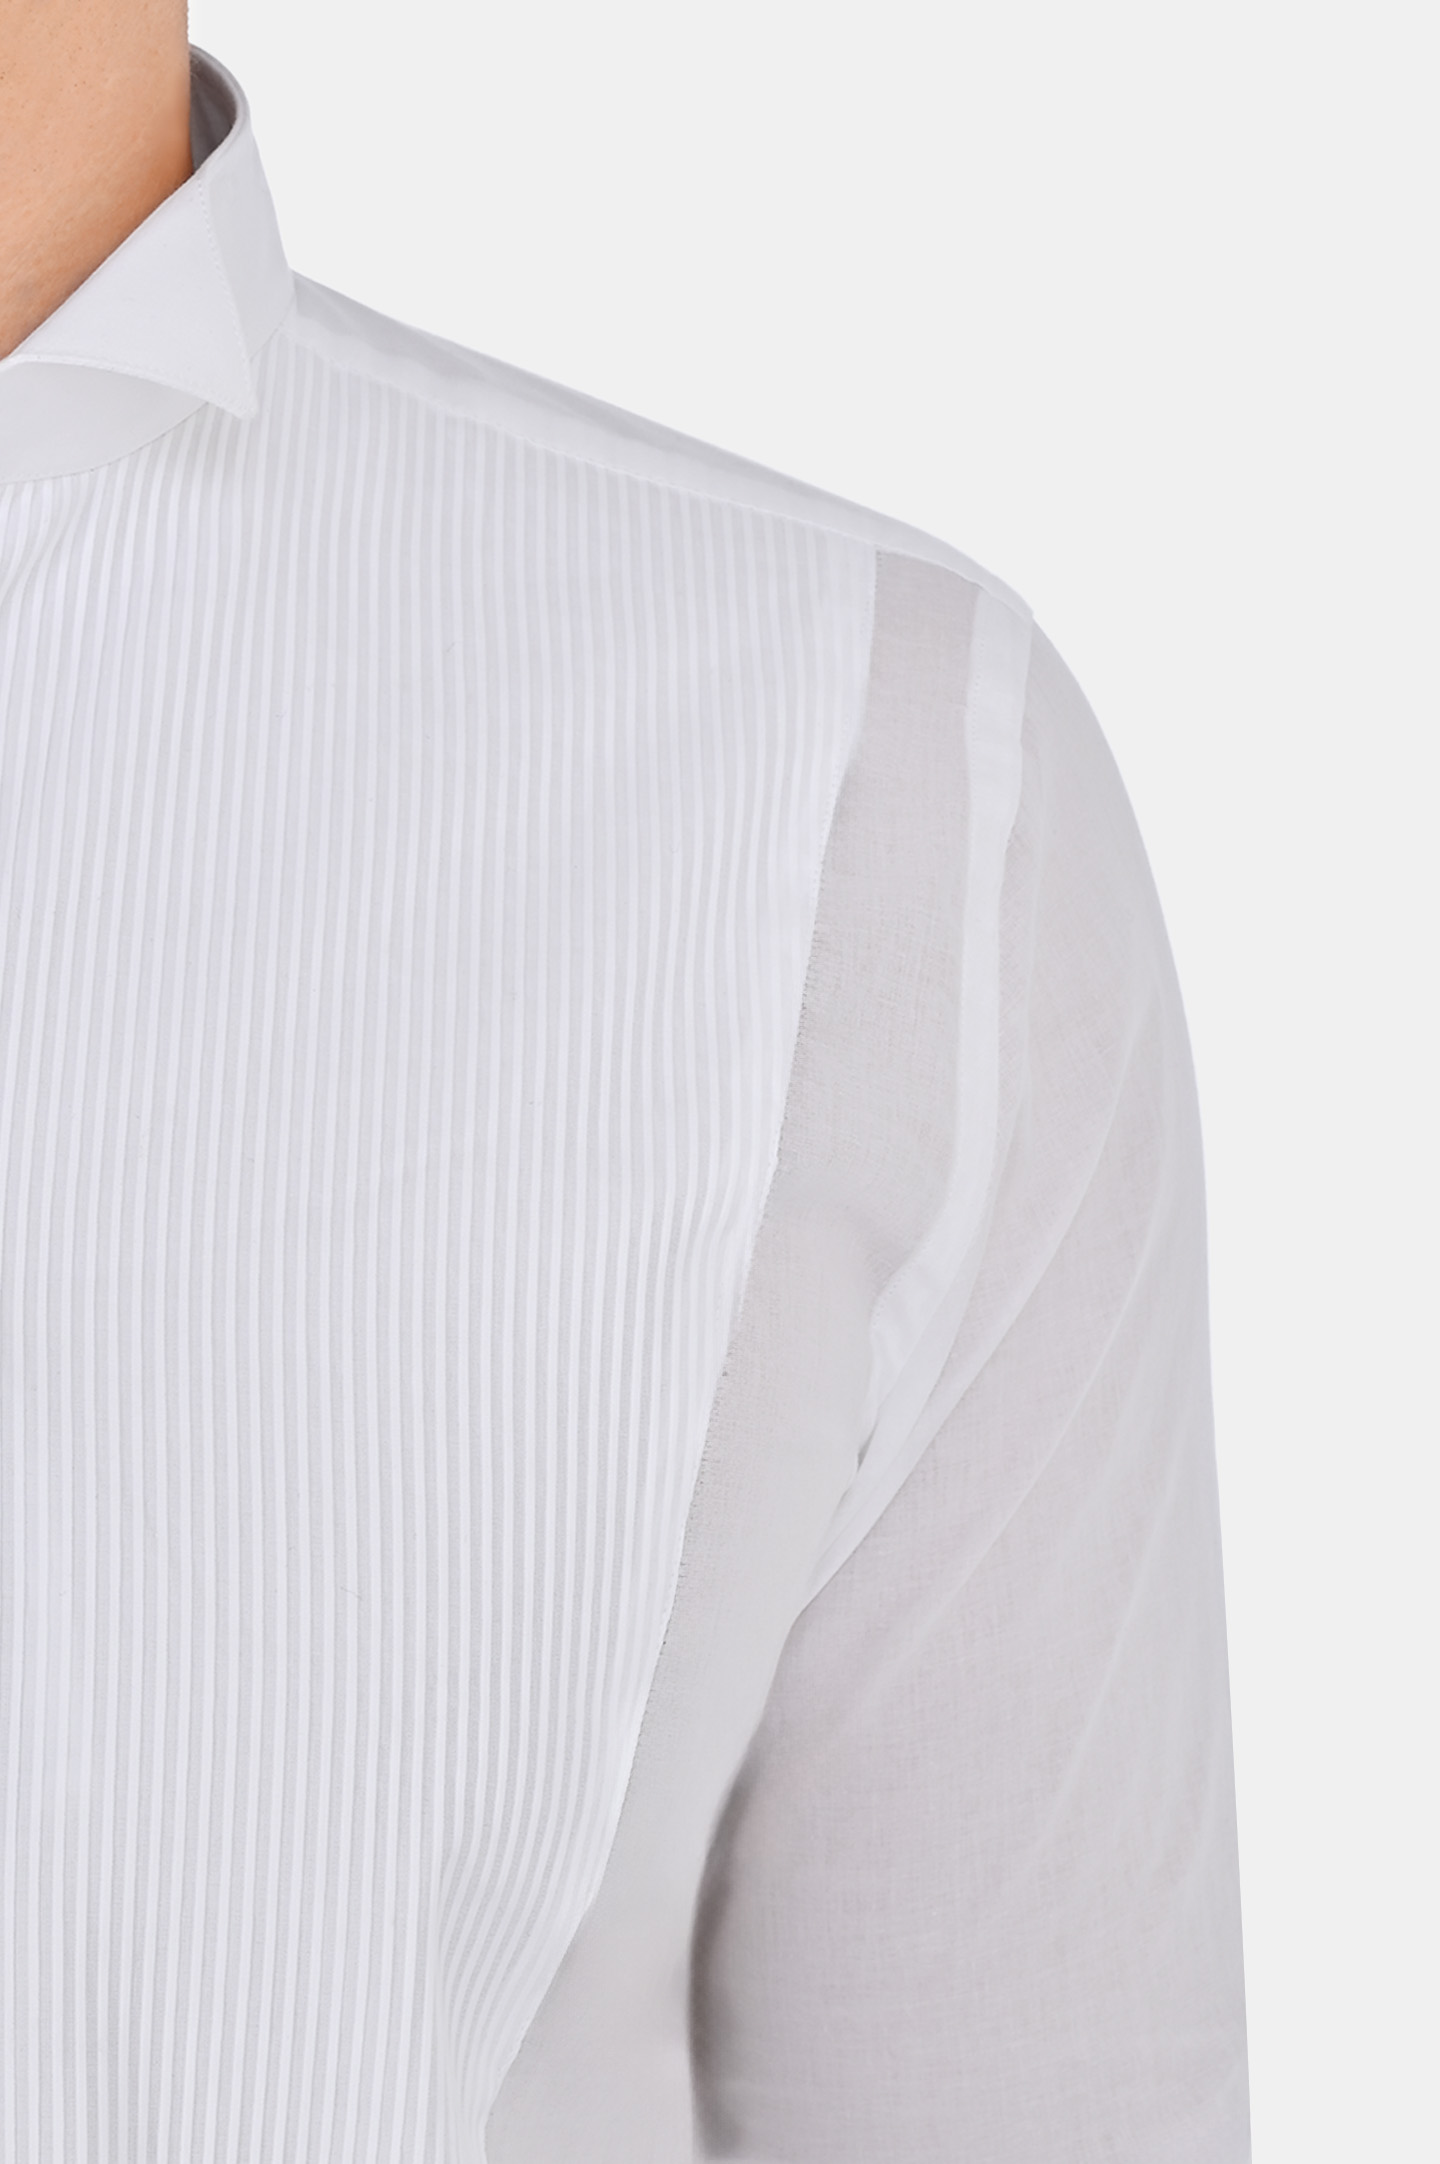 Рубашка CANALI GC00134 782, цвет: Белый, Мужской